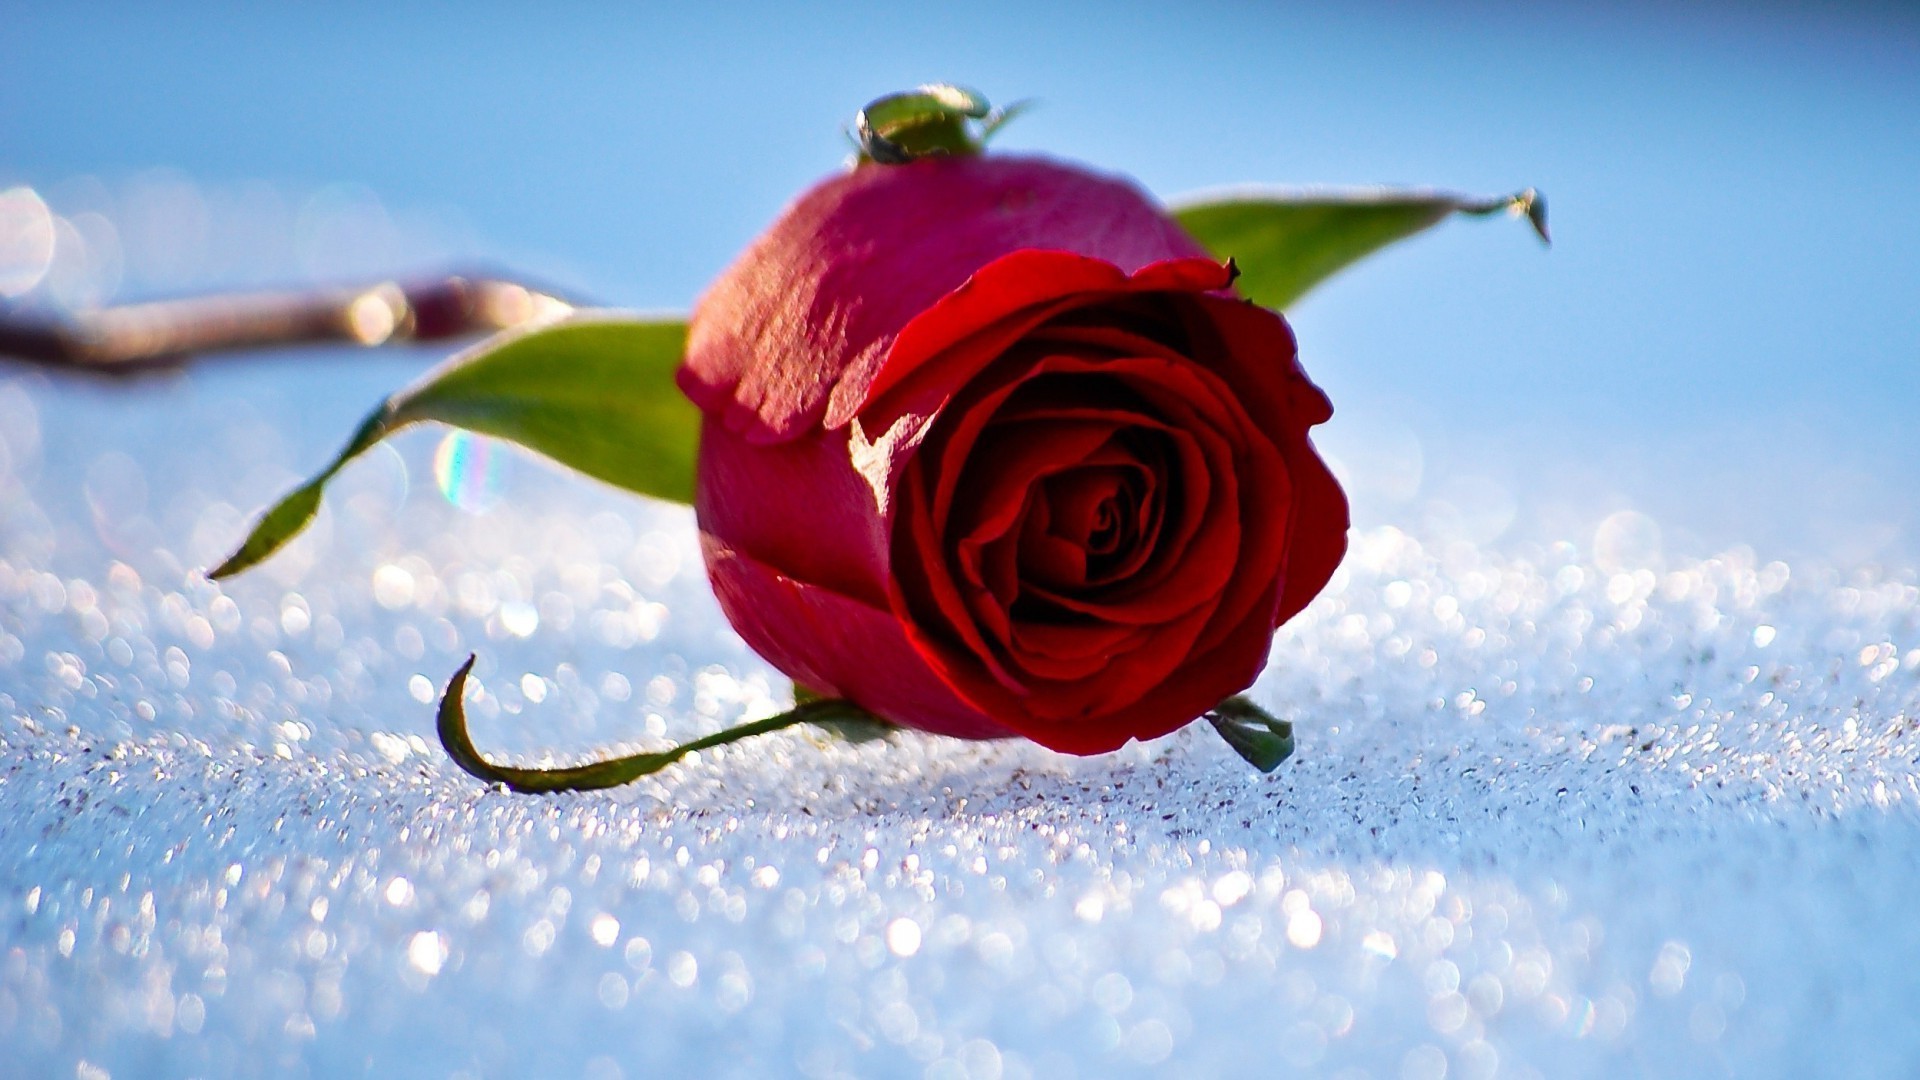 розы природа цветок любовь на открытом воздухе красивые лето романтика романтический сезон зима цвет флора лист снег лепесток цветочные